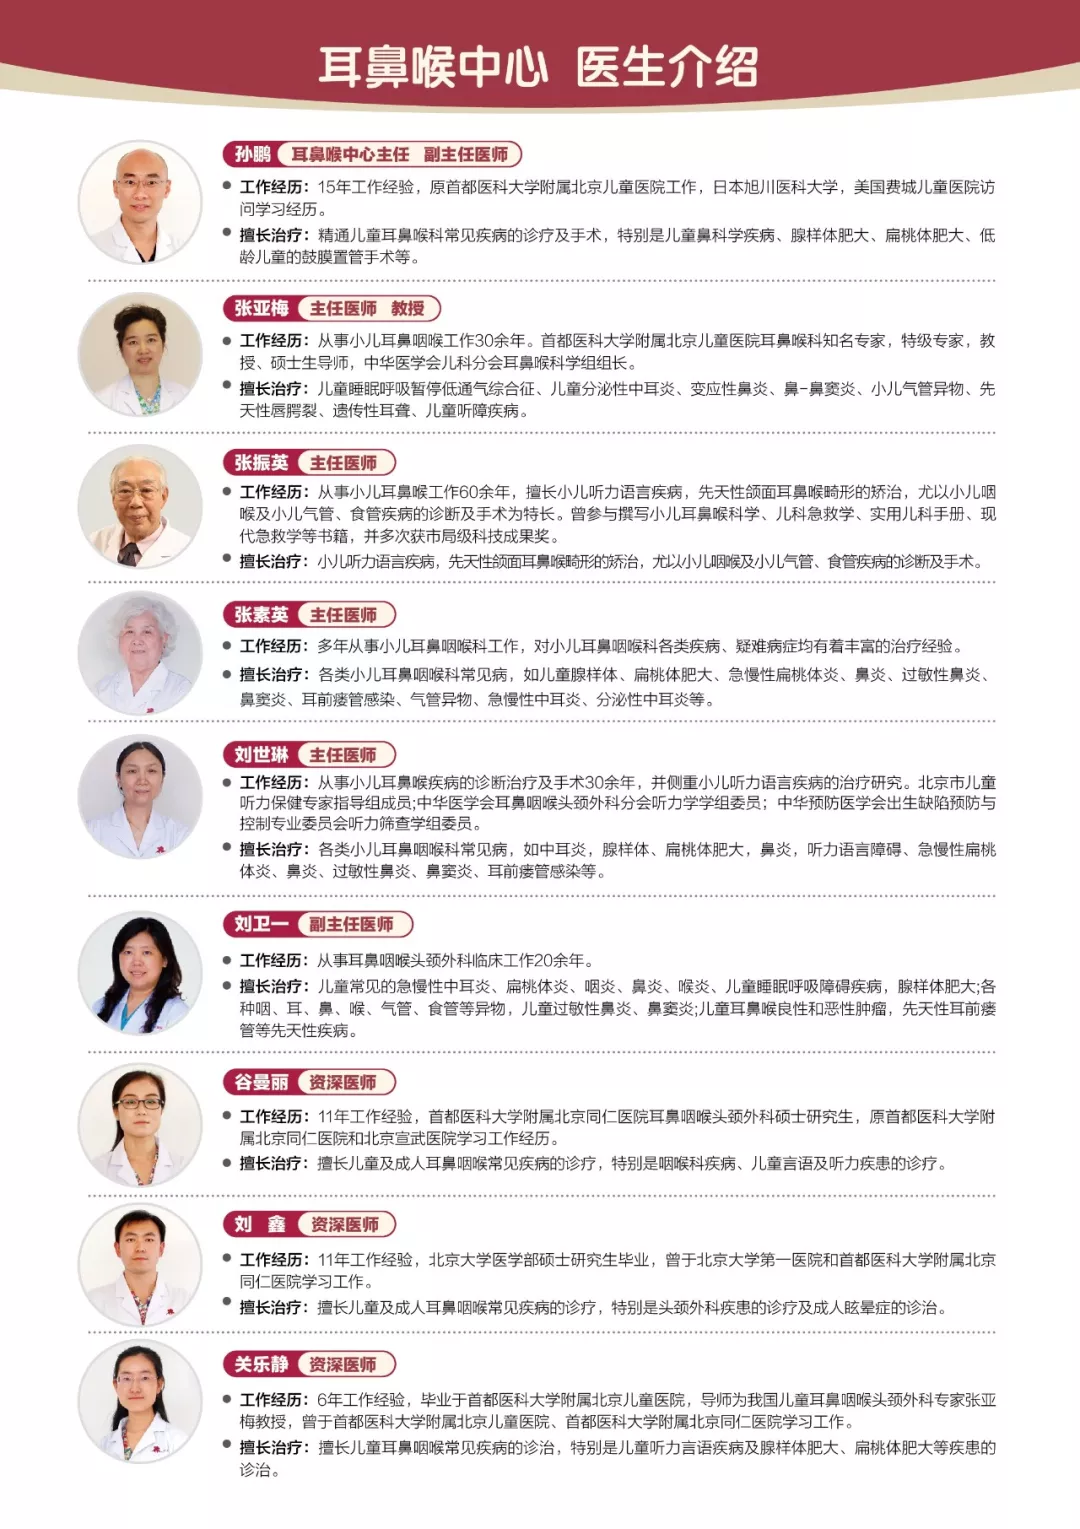 新世纪医疗耳鼻喉中心医师团队汇聚北京地区多位耳鼻喉科的专家级人物